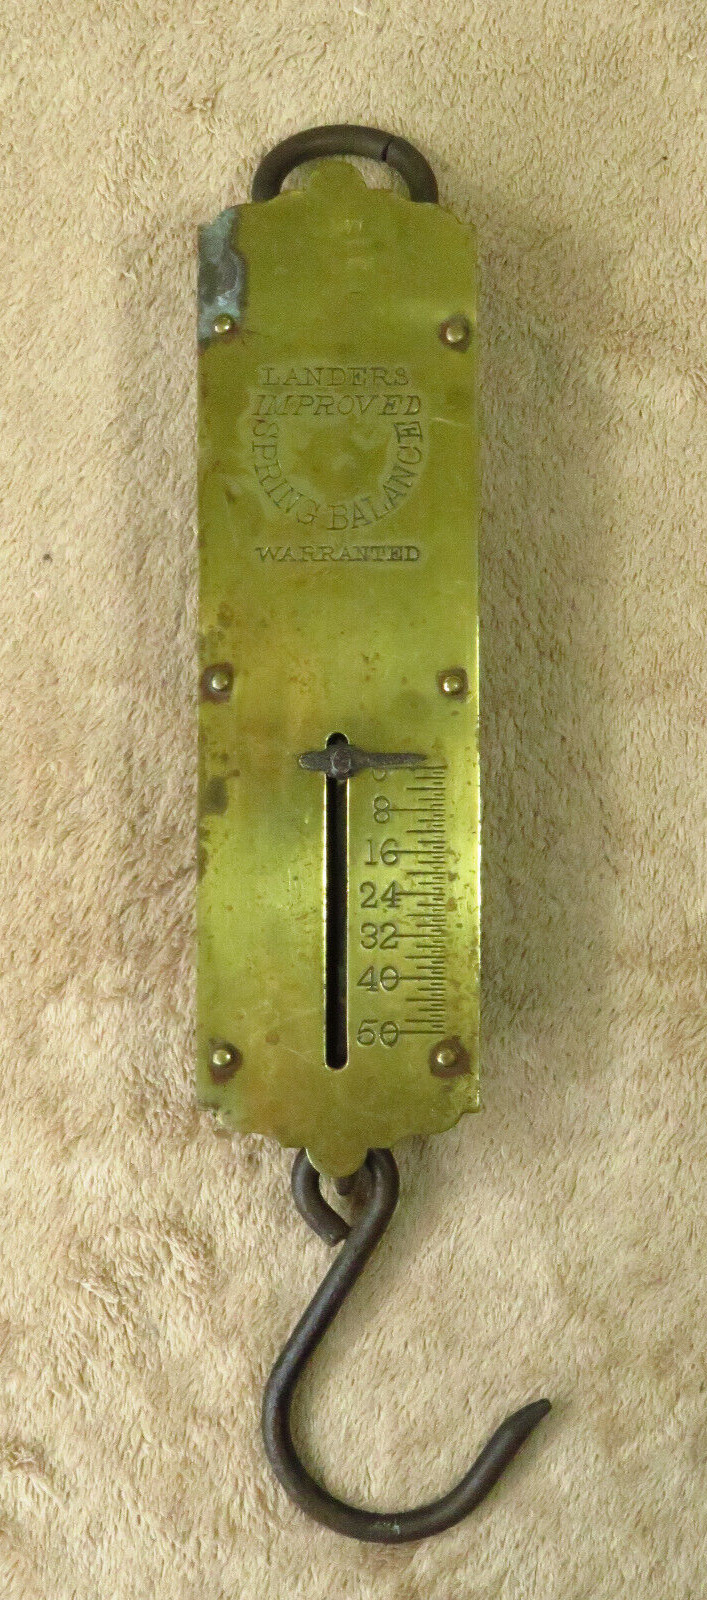 Nice Antique Primitive Landers Improved Vintage Spring Balance Scale / 50 lbs